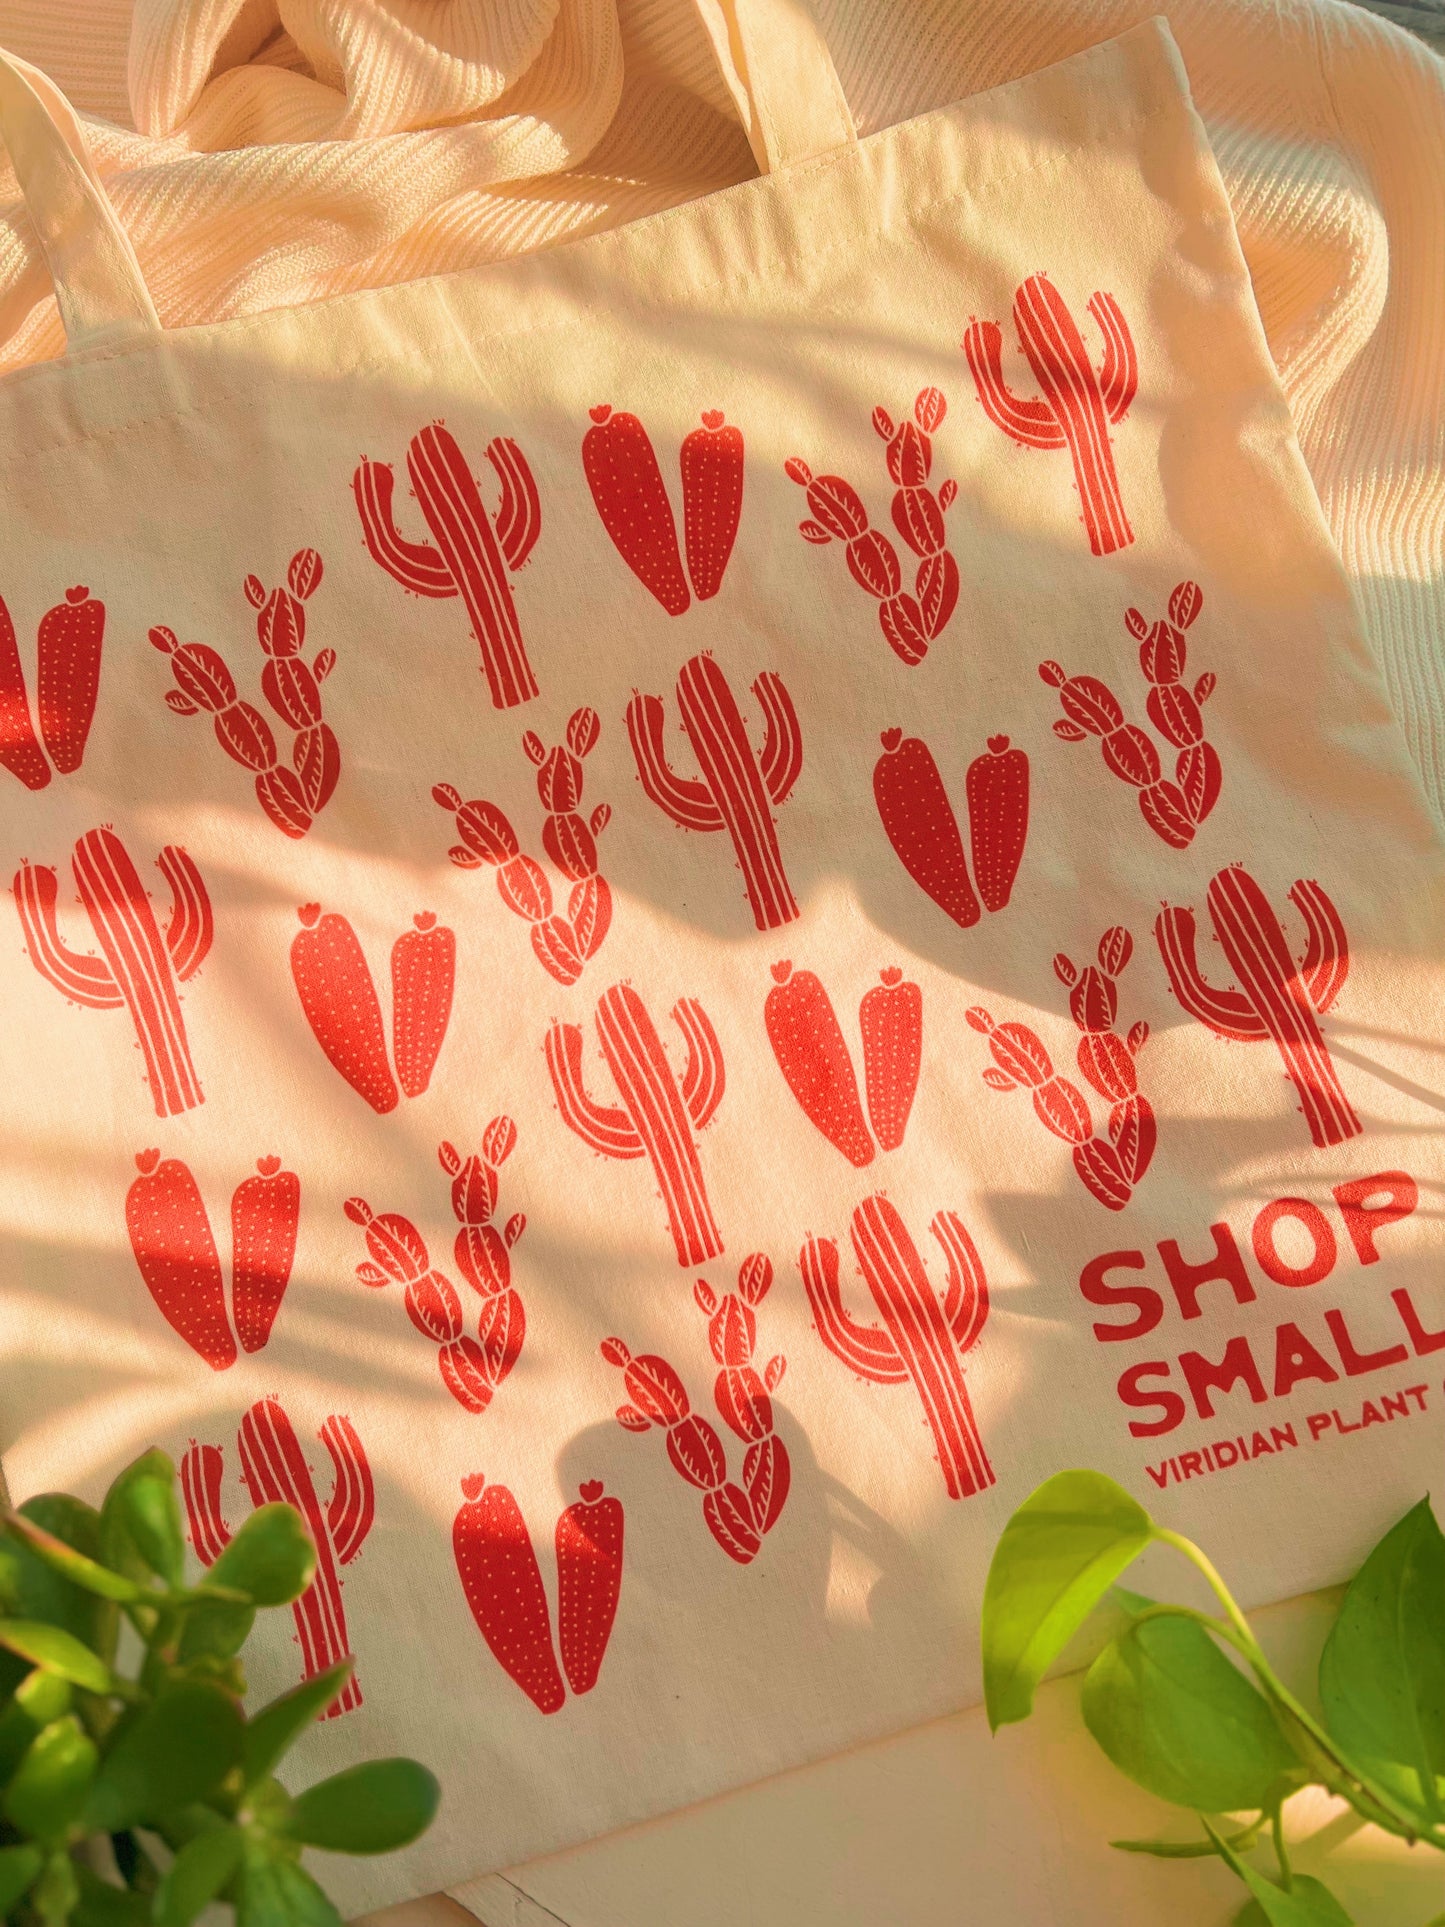 "Shop Small" Cacti Tote Bag